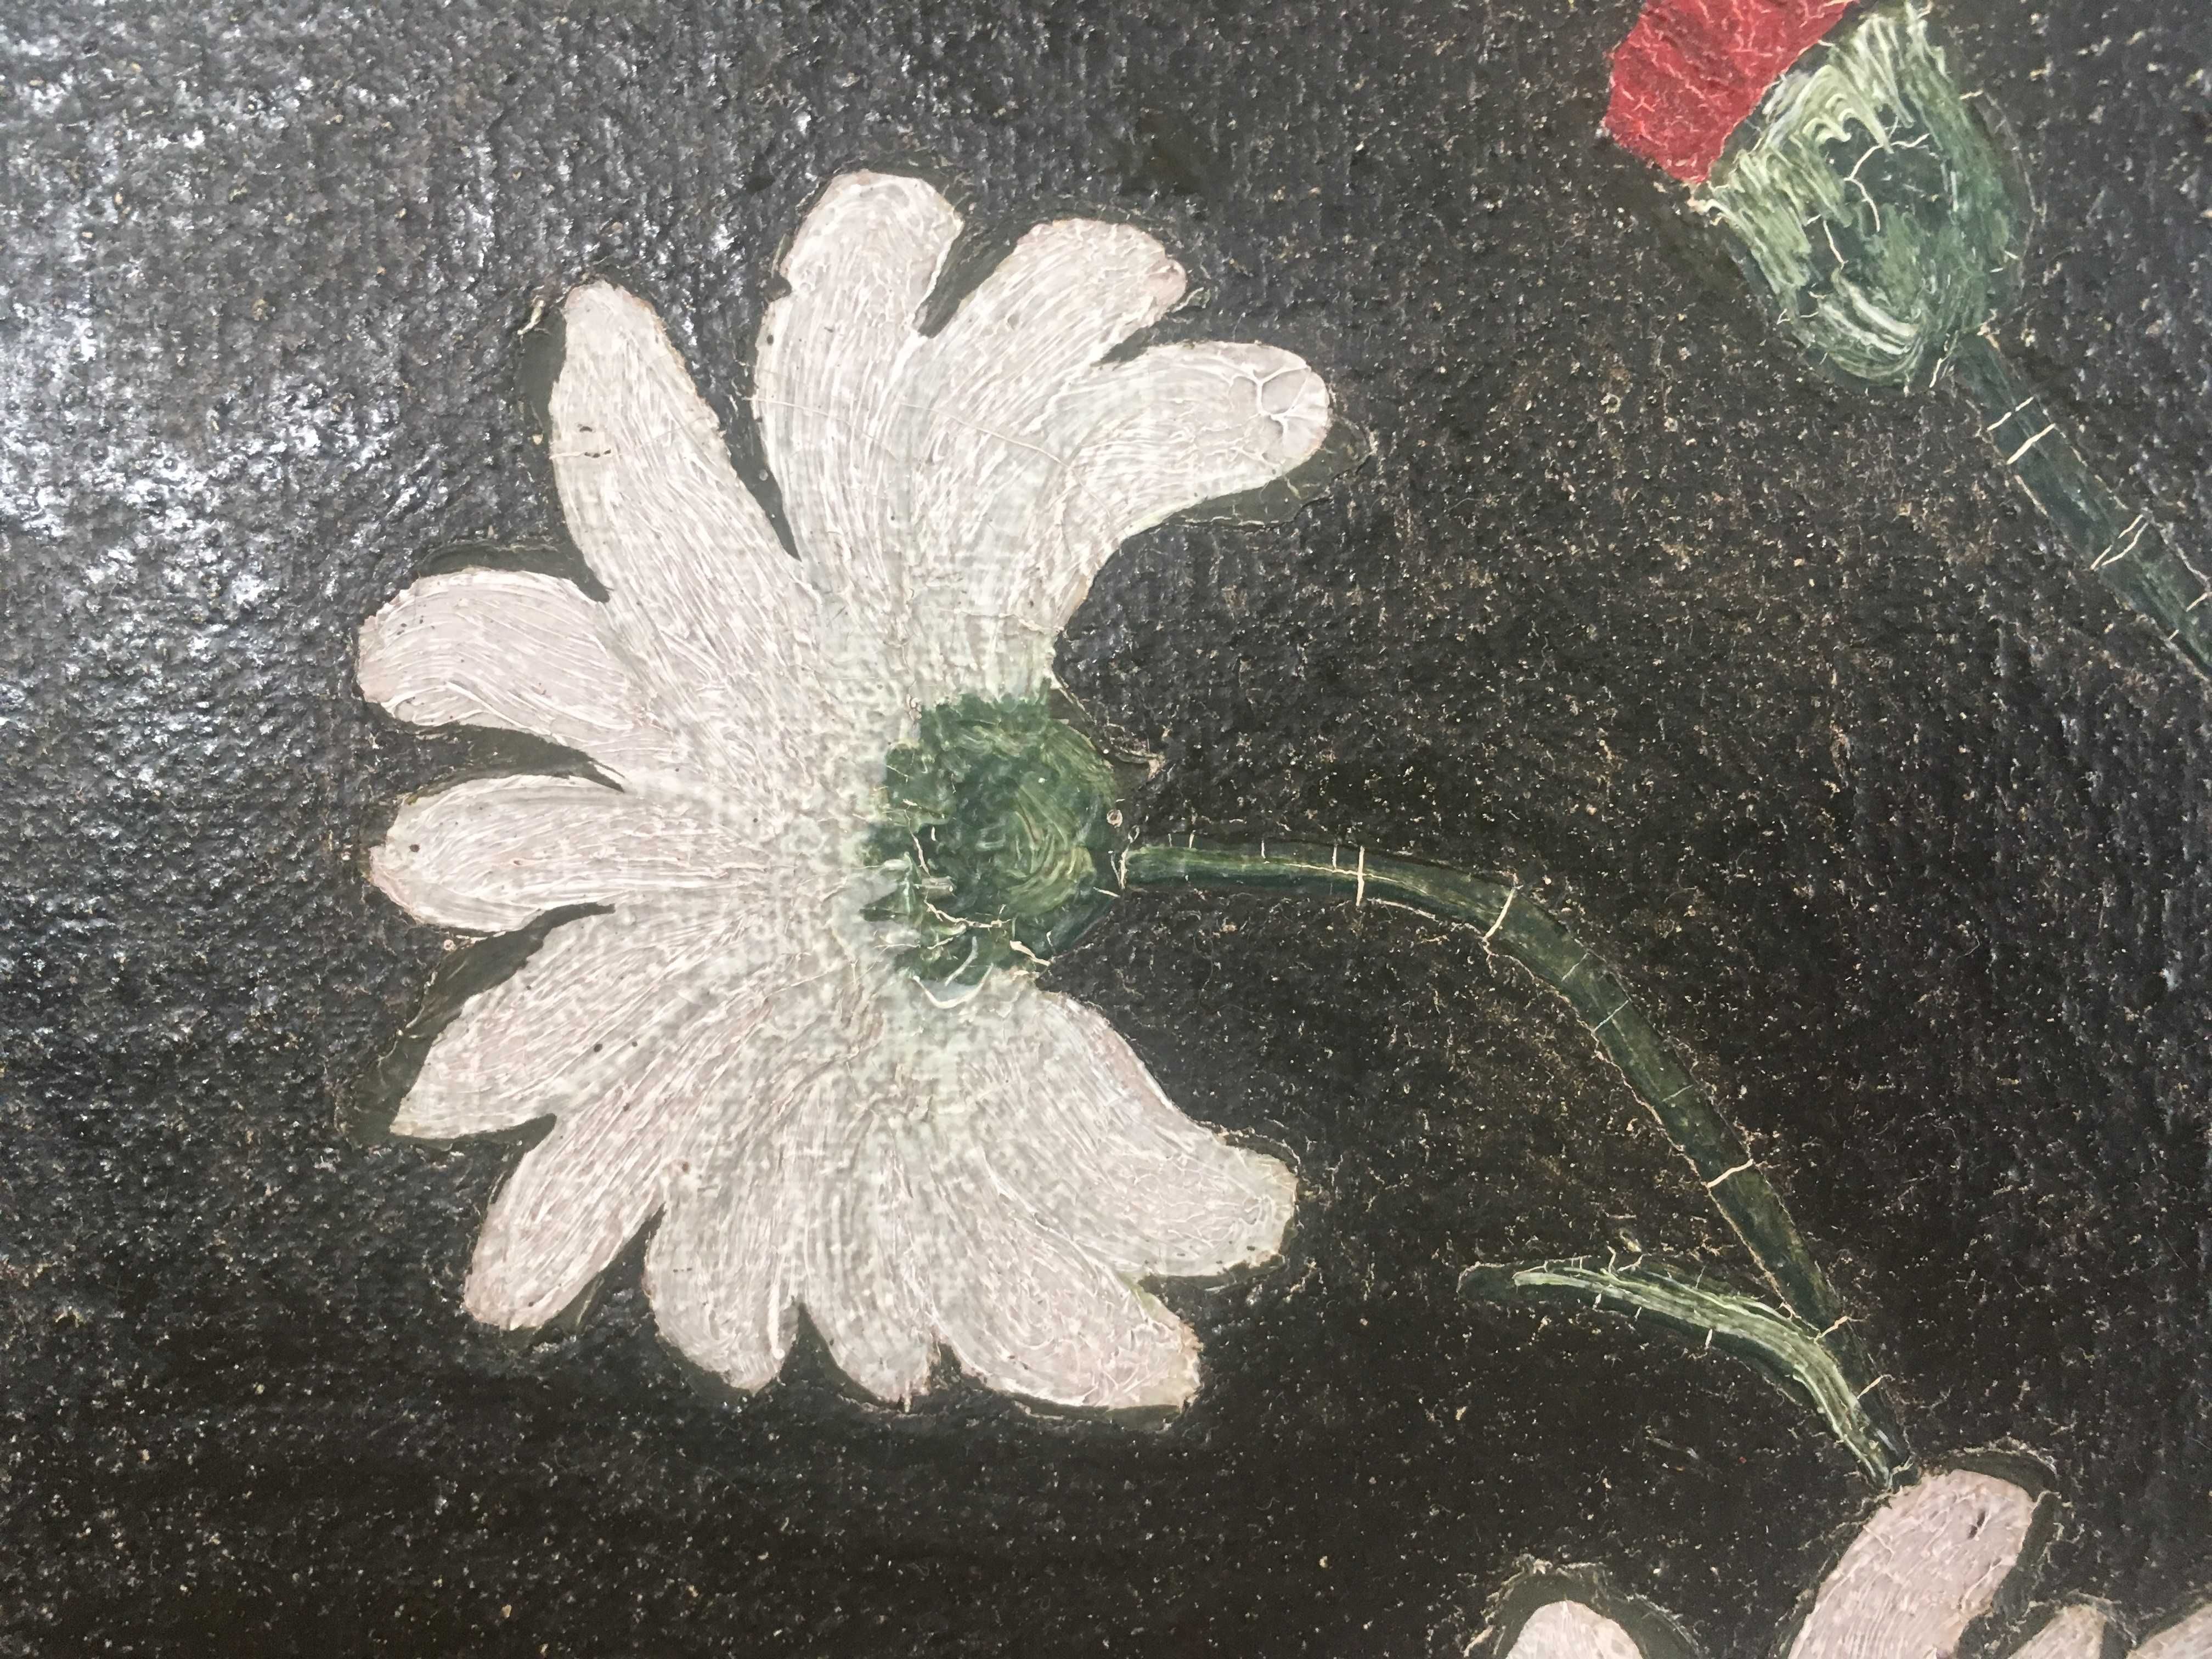 Obraz kolekcjonerski na płótnie: kwiaty w wazonie